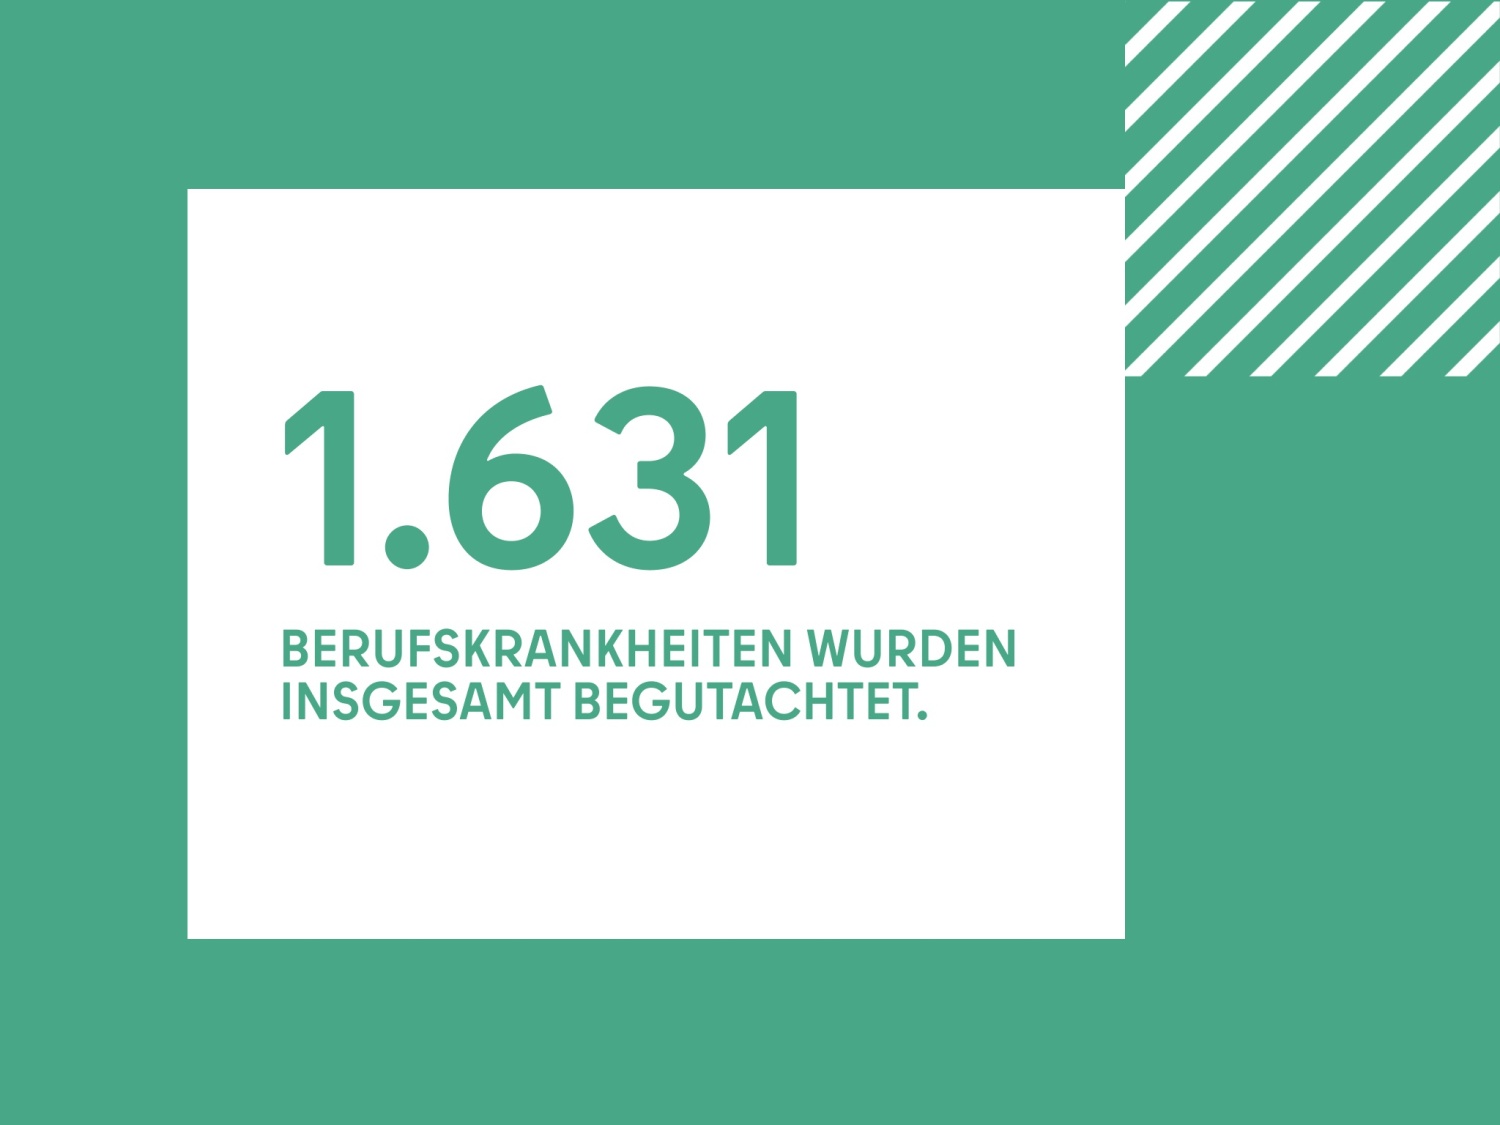 1.631 BERUFSKRANKHEITEN WURDEN INSGESAMT BEGUTACHTET.